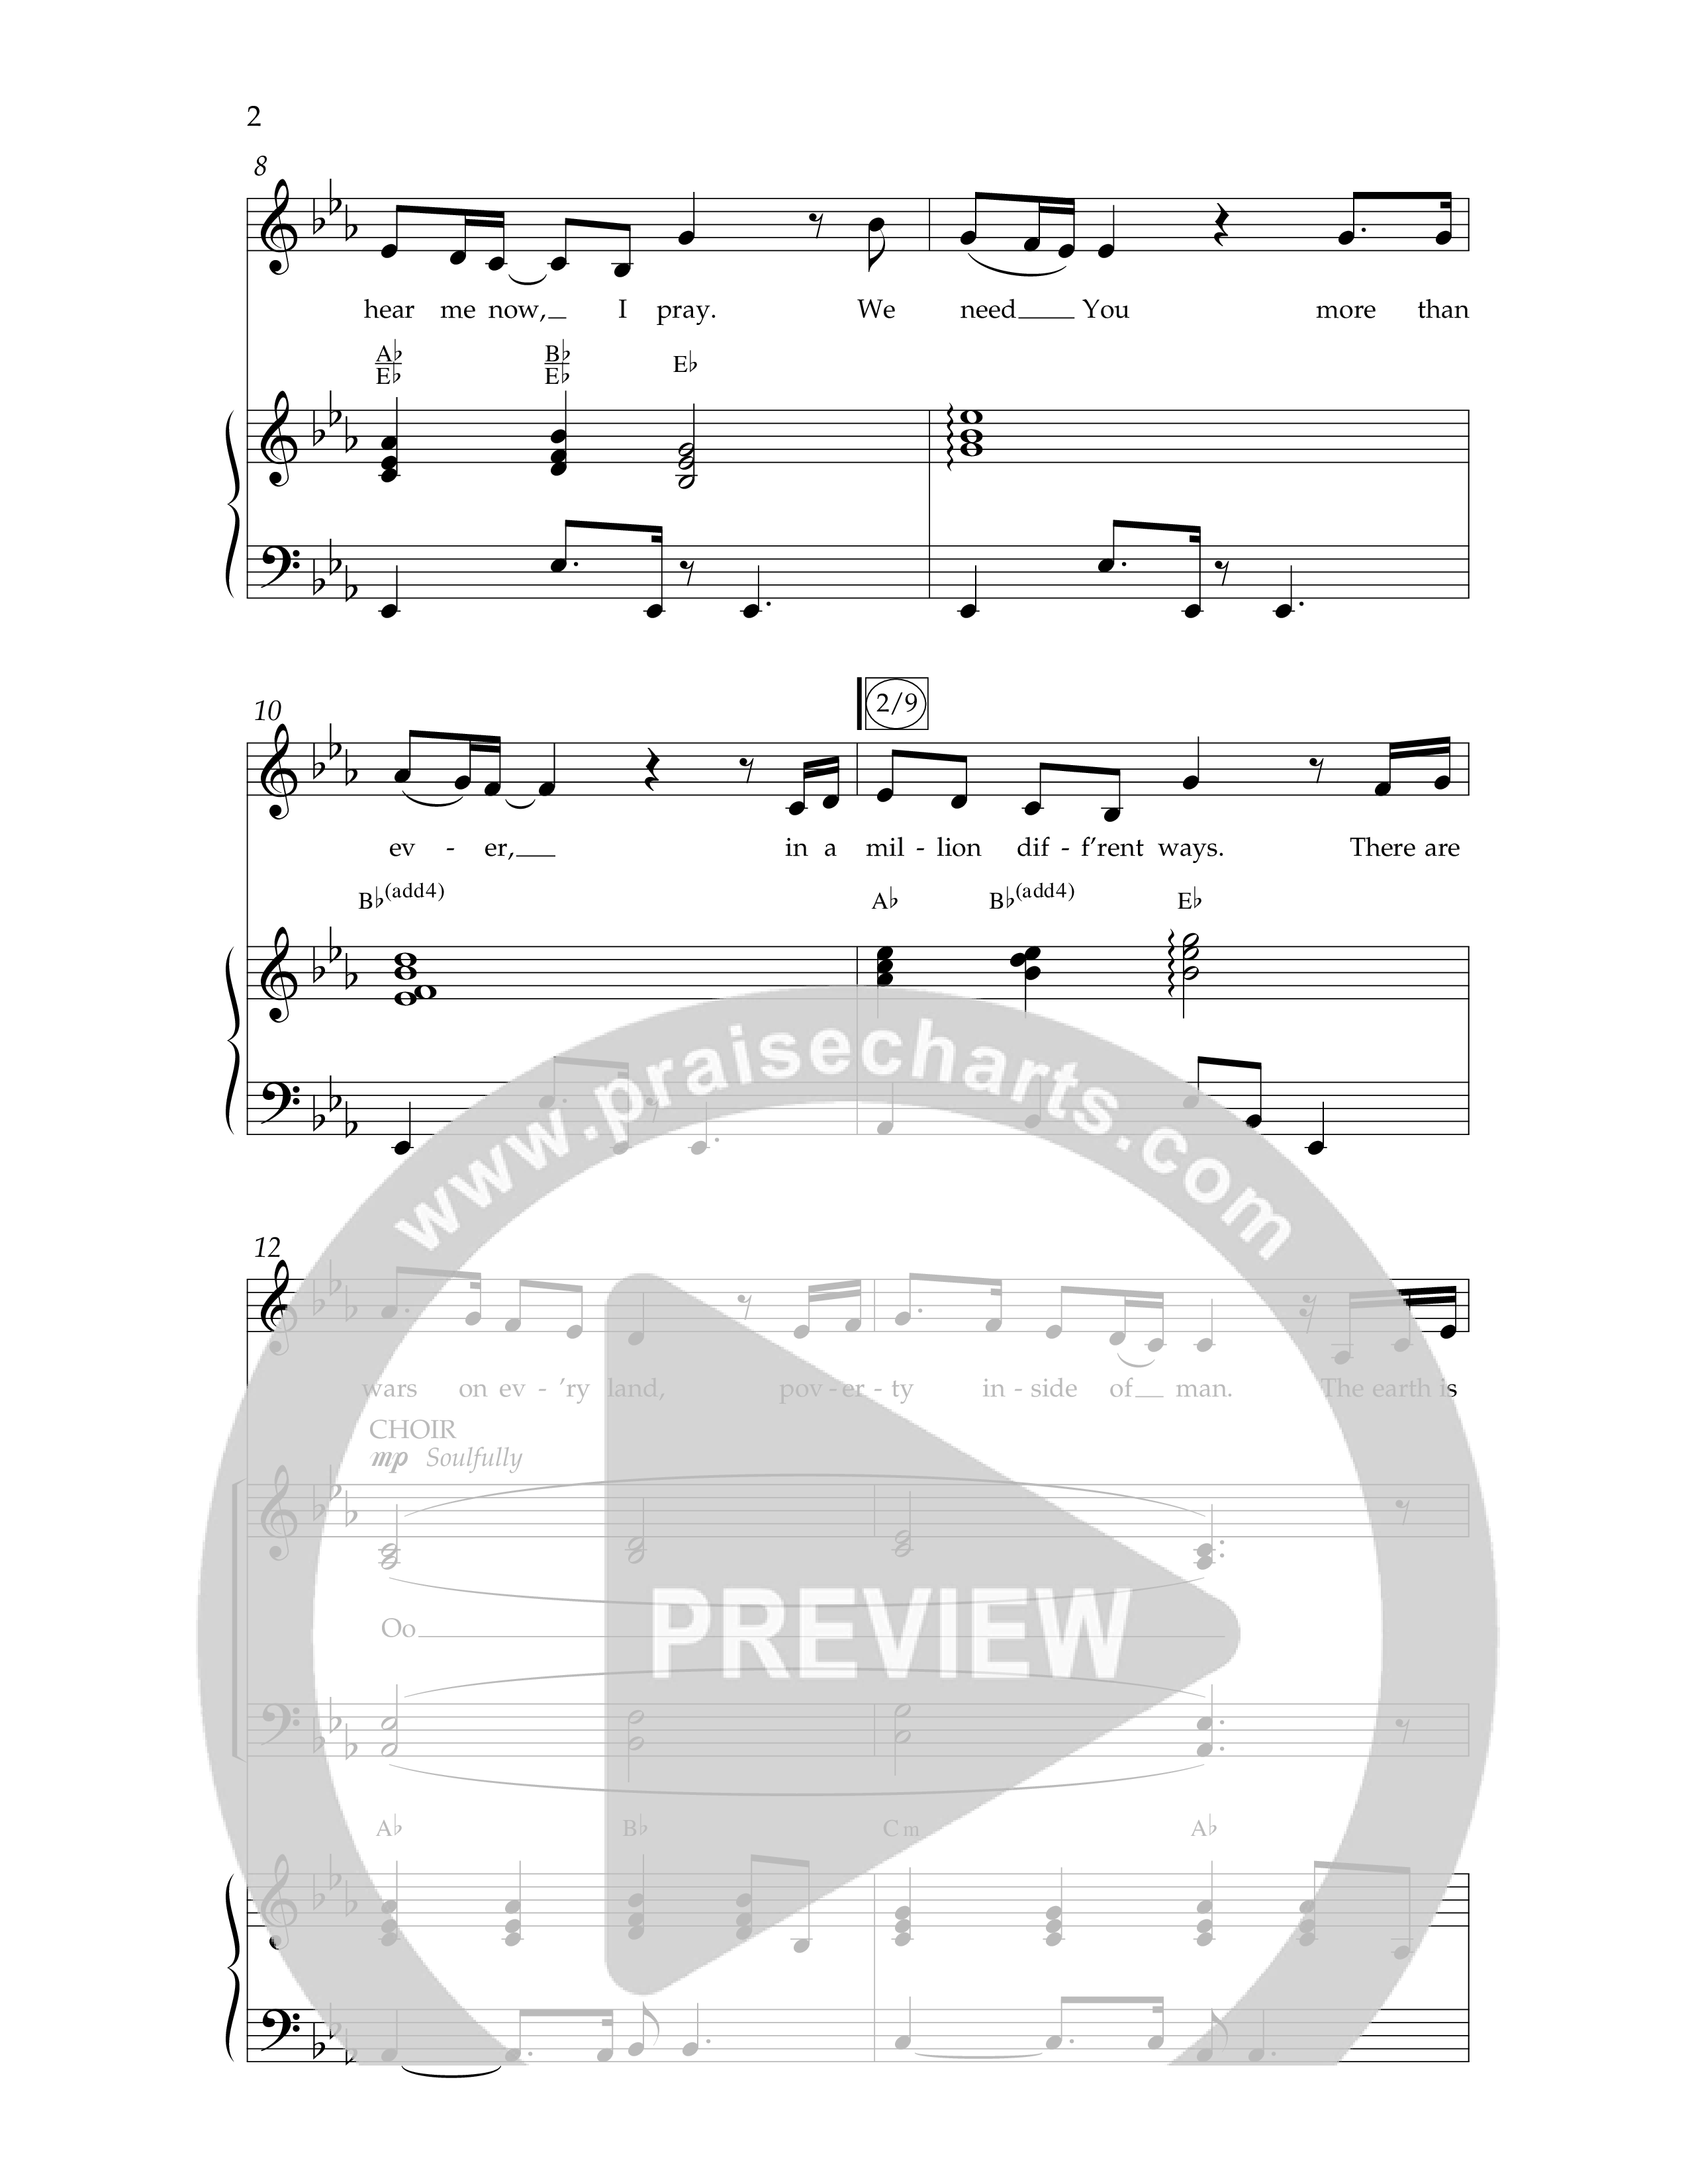 Kingdom Come (Choral Anthem SATB) Anthem (SATB/Piano) (Lifeway Choral / Arr. Bradley Knight)